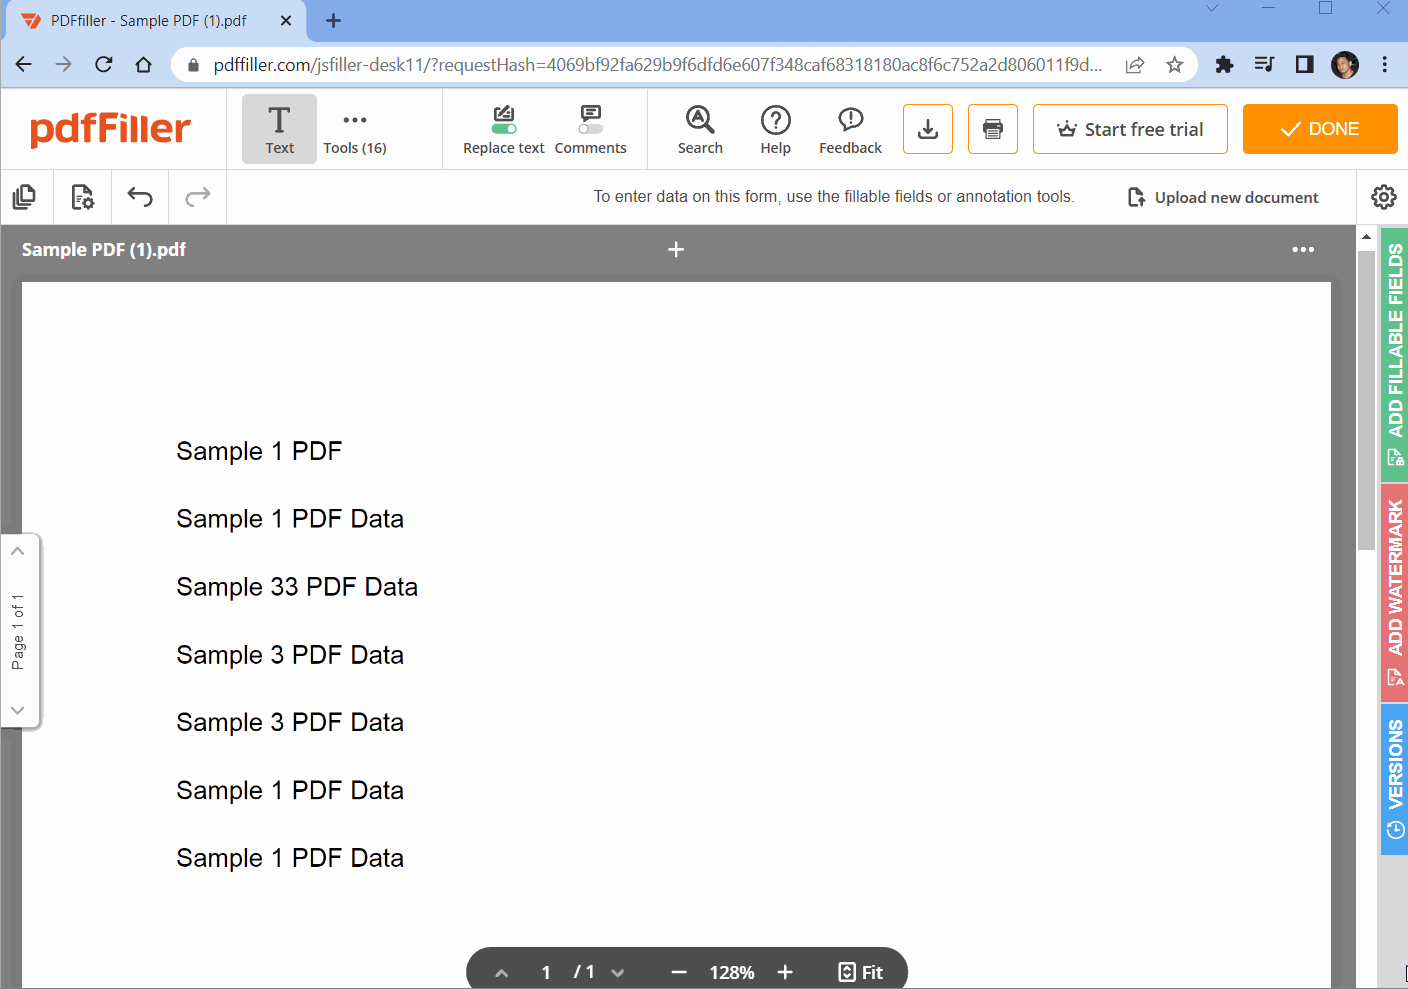 PDFFiller Sample Workflow